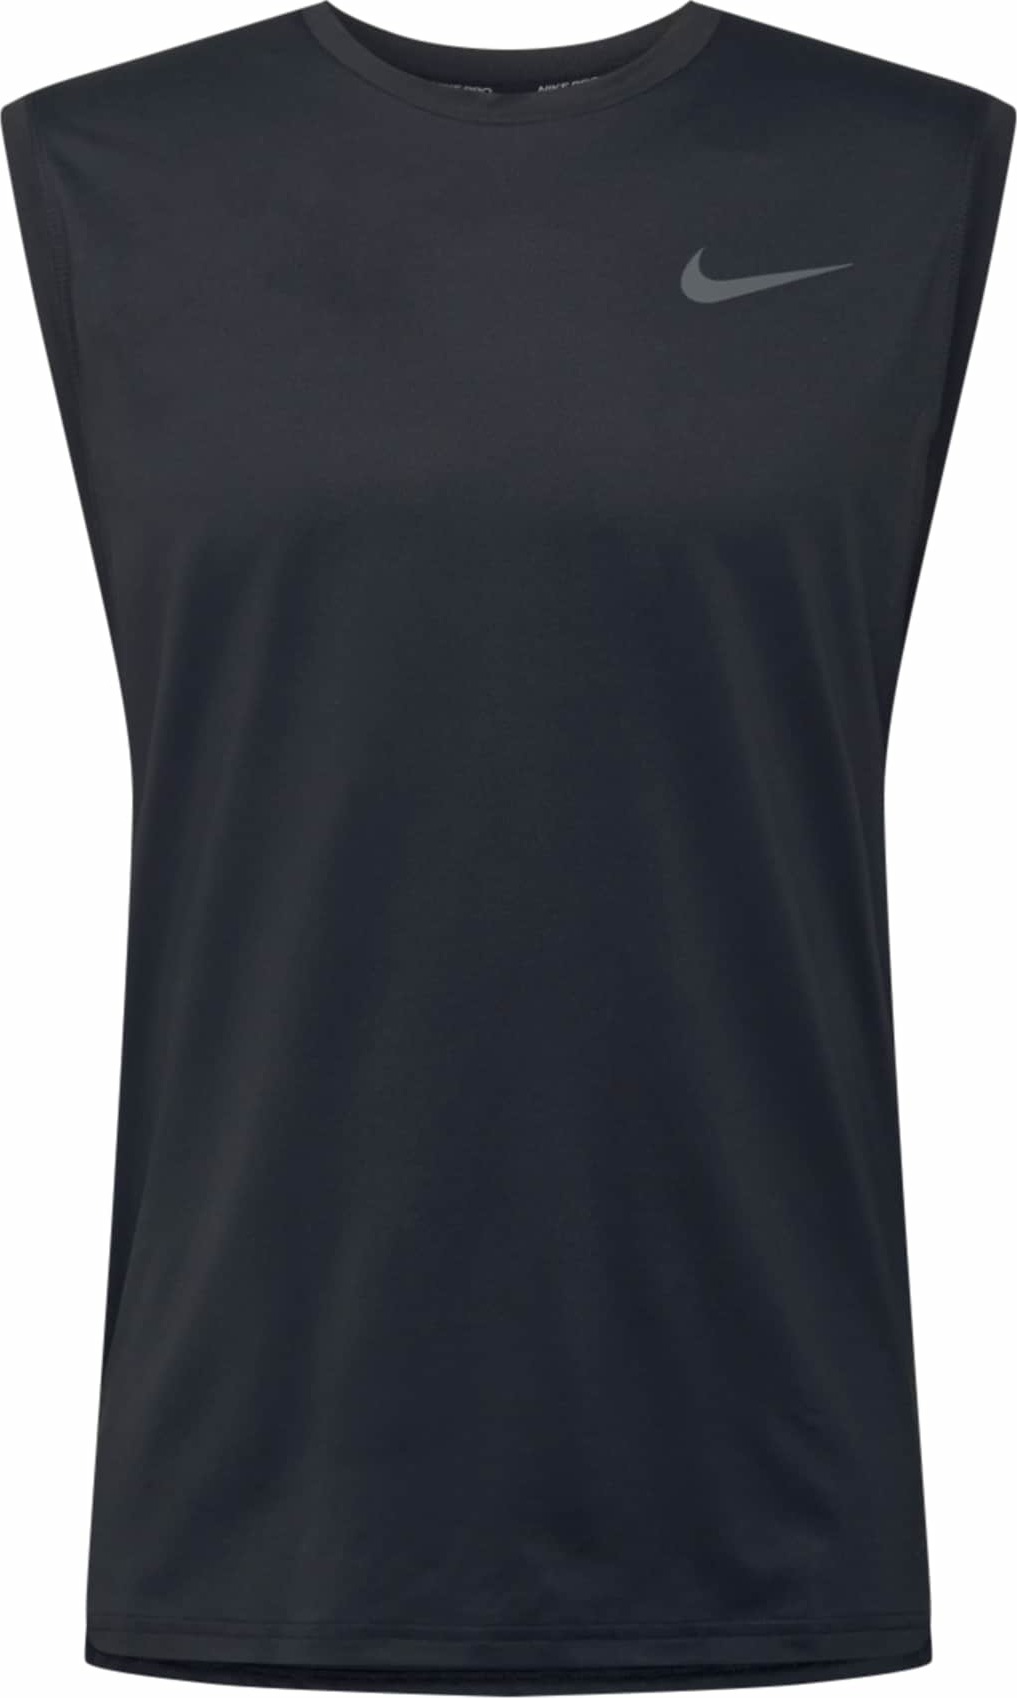 Funkční tričko Nike tmavě šedá / černá